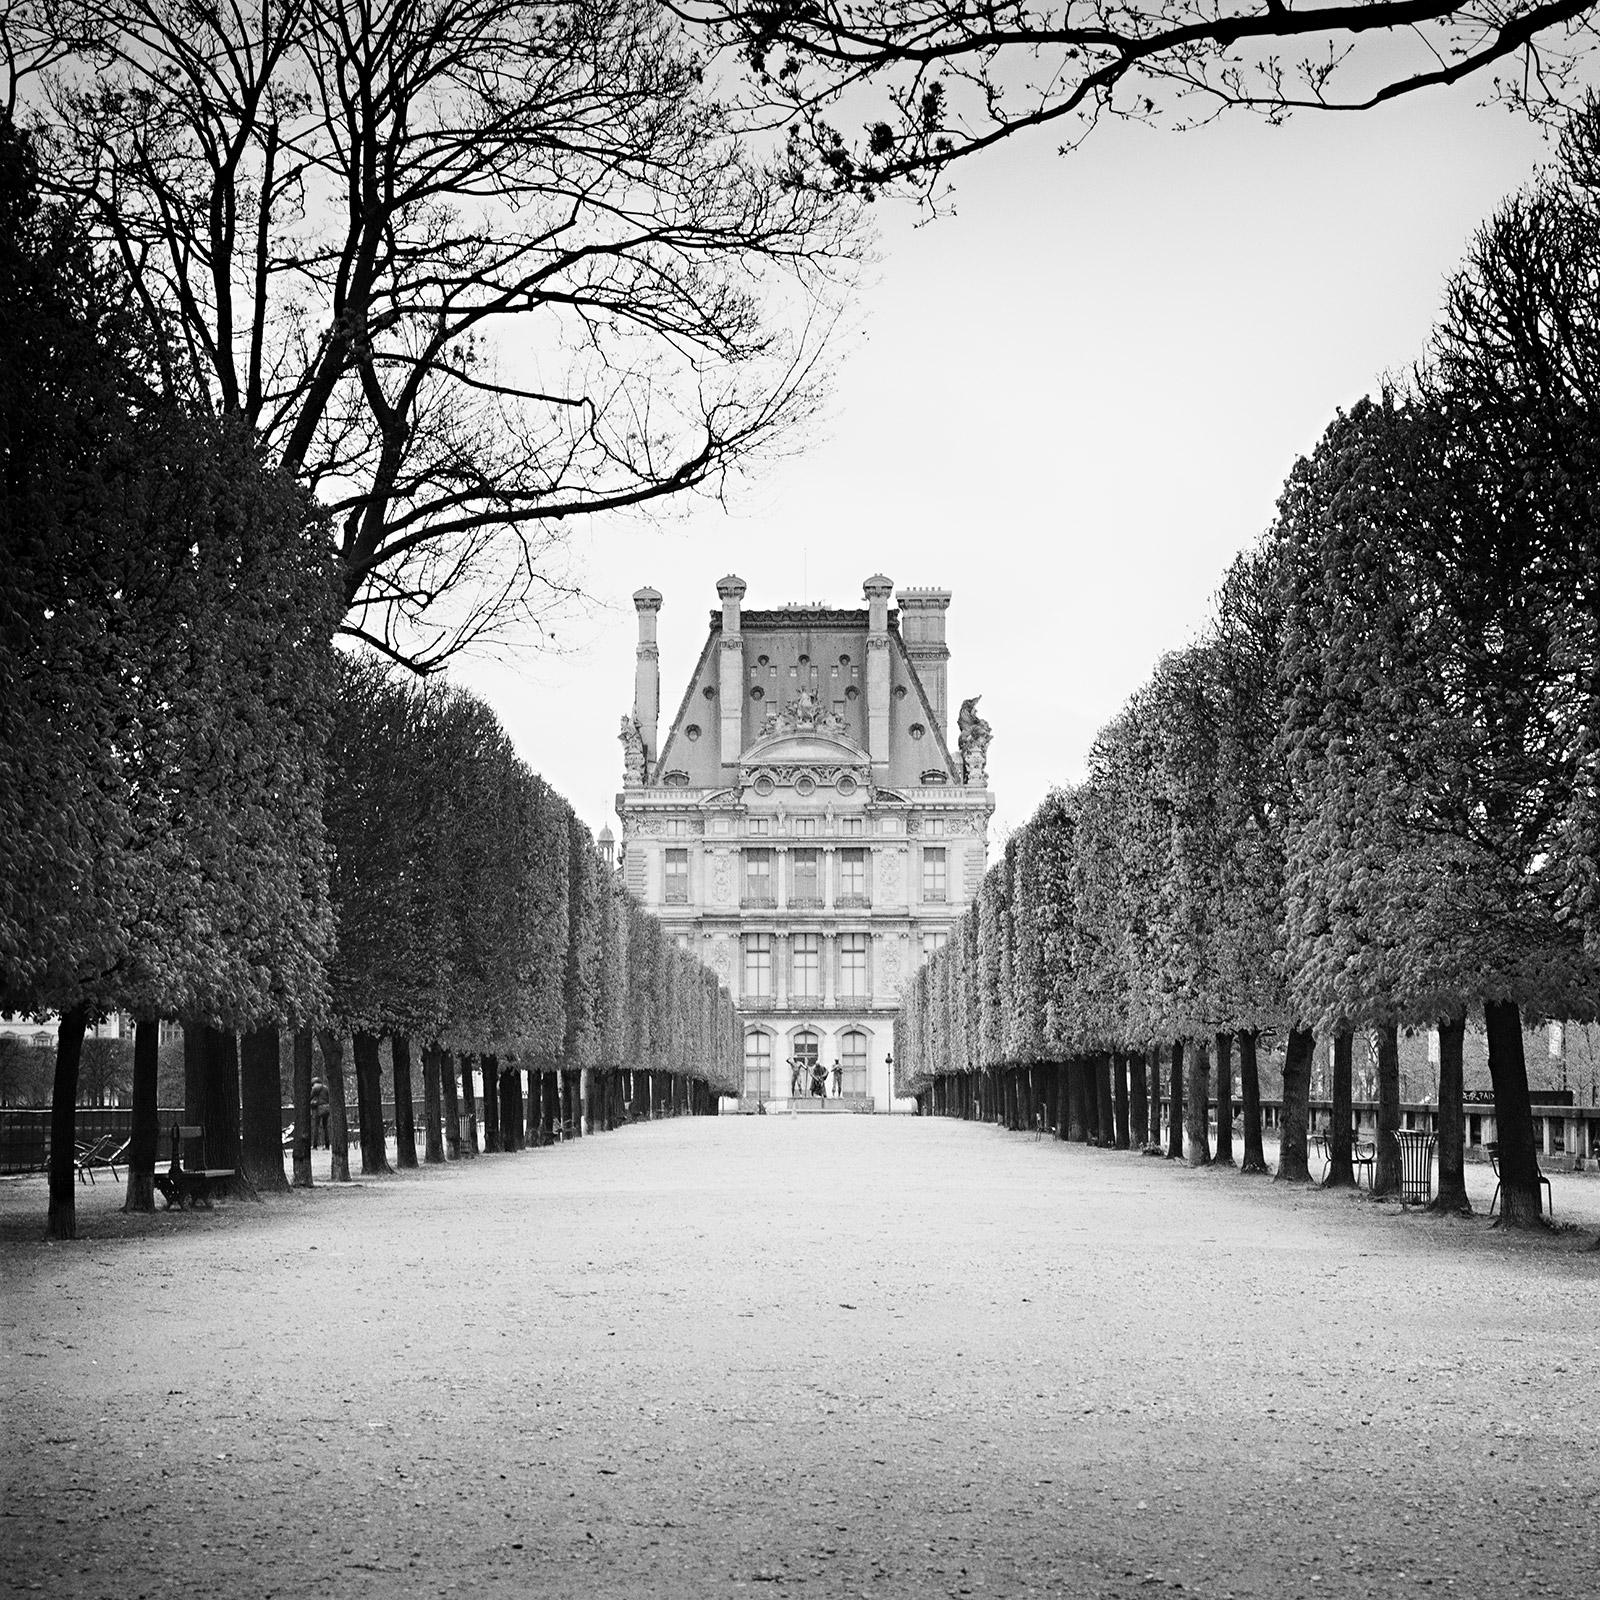 Gerald Berghammer Black and White Photograph - Pavillon de Flore, Paris, France, black and white art photography, cityscape